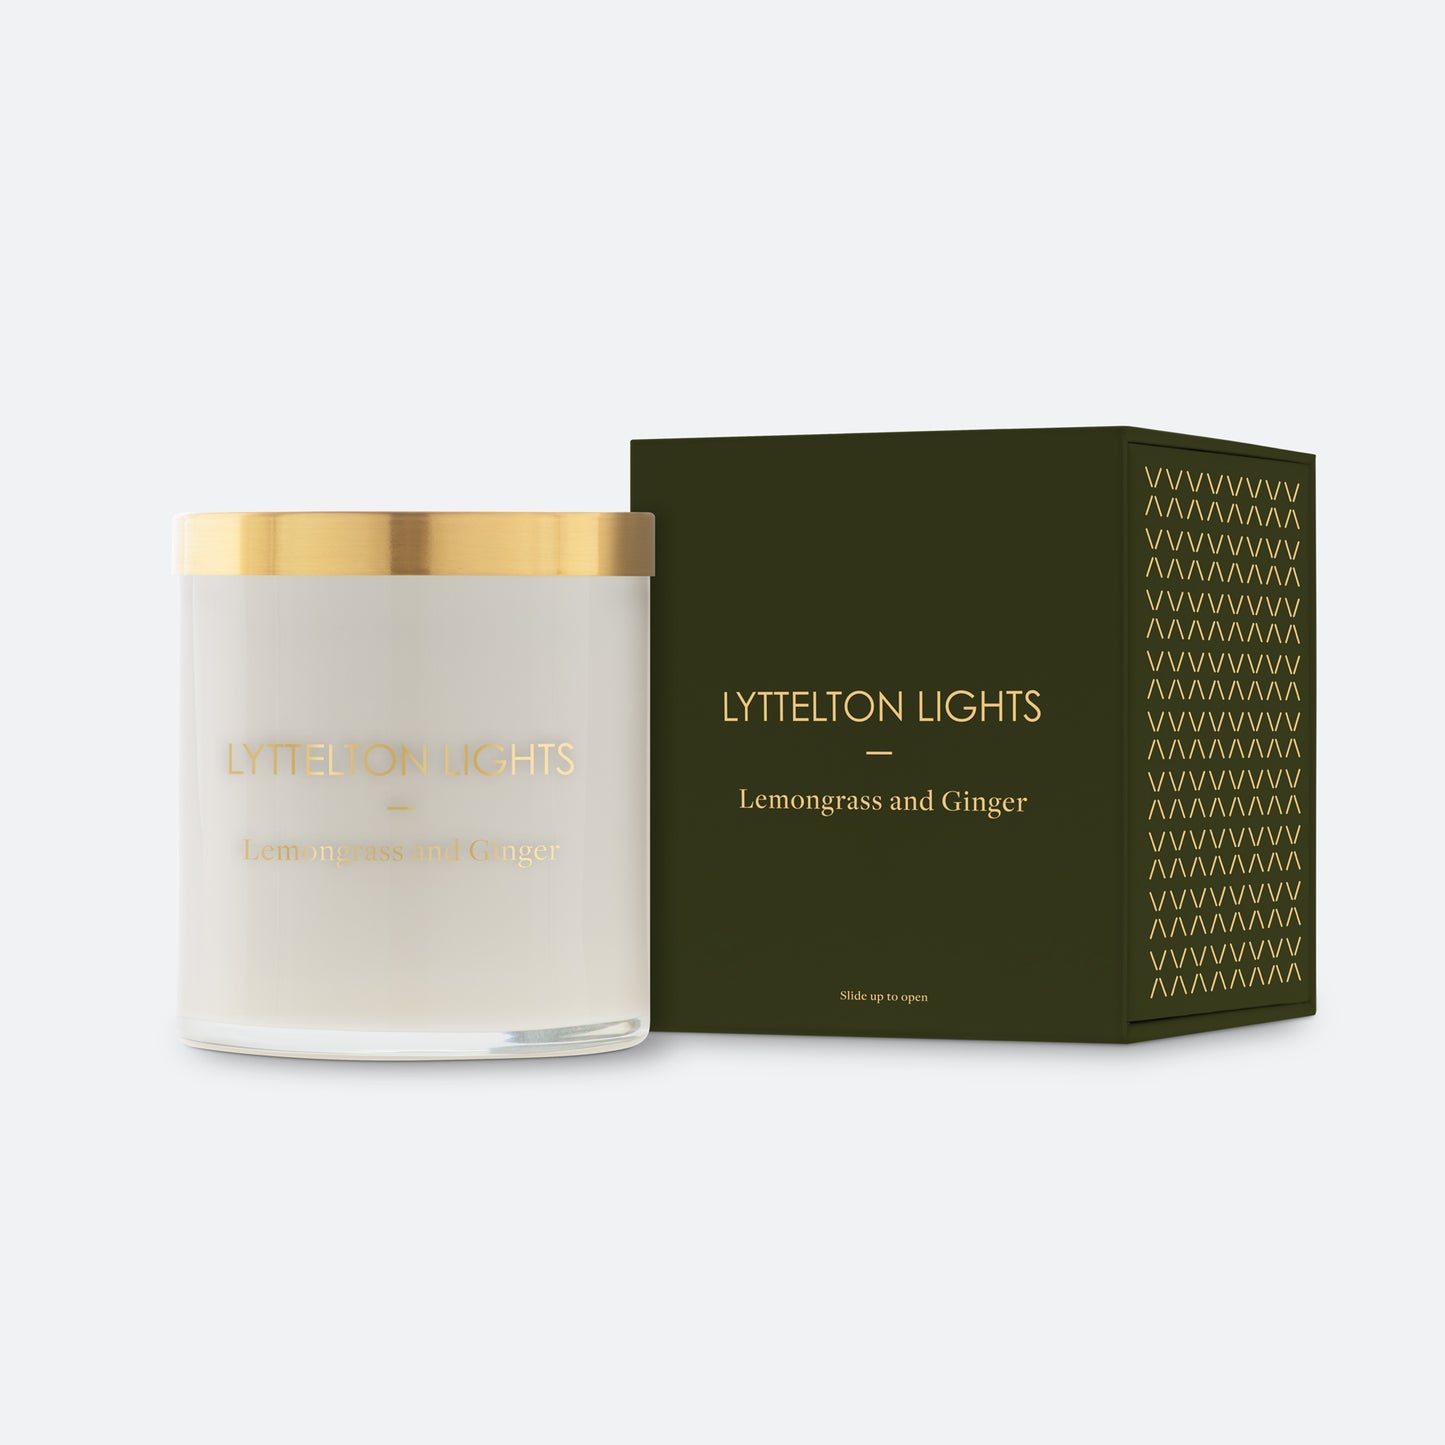 Lemongrass & Ginger Candle by Lyttelton lights